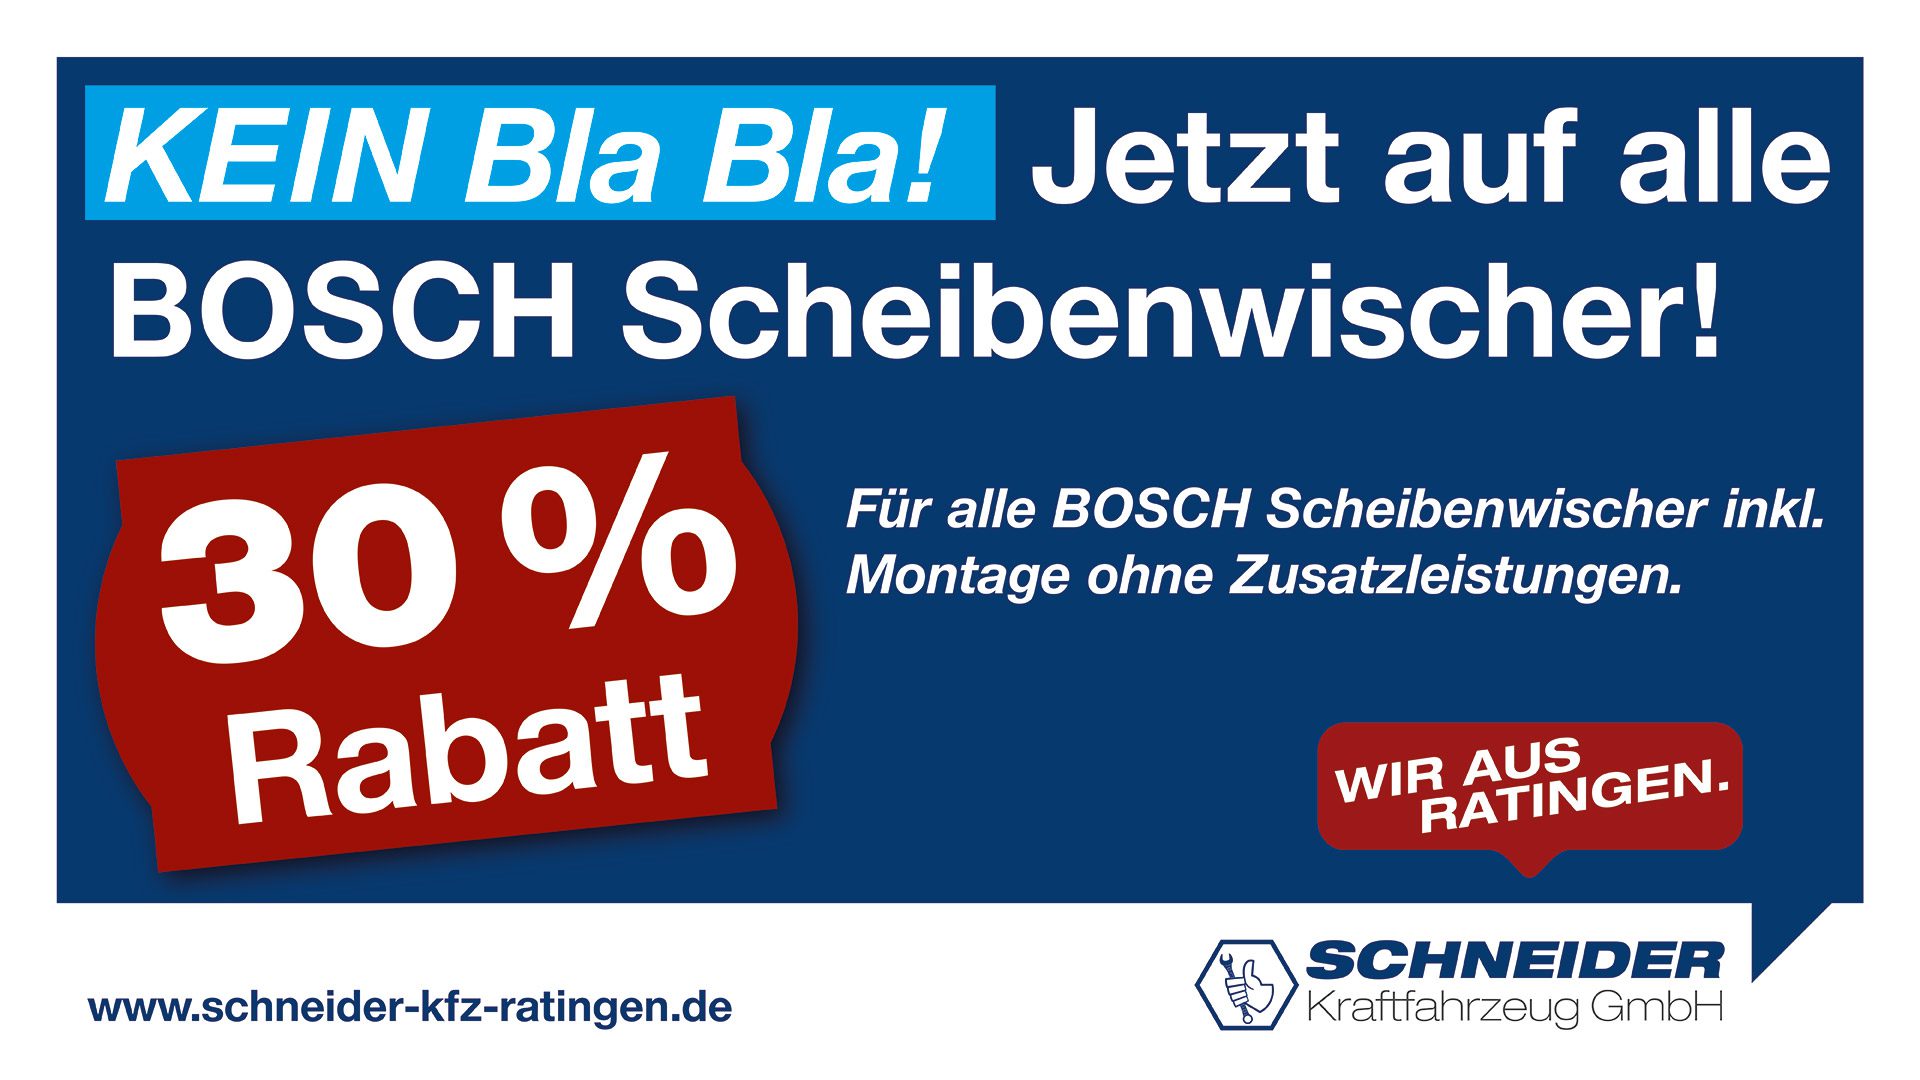 Scheibenwischer Rabatt | Schneider Kraftfahrzeug GmbH - Ratingen